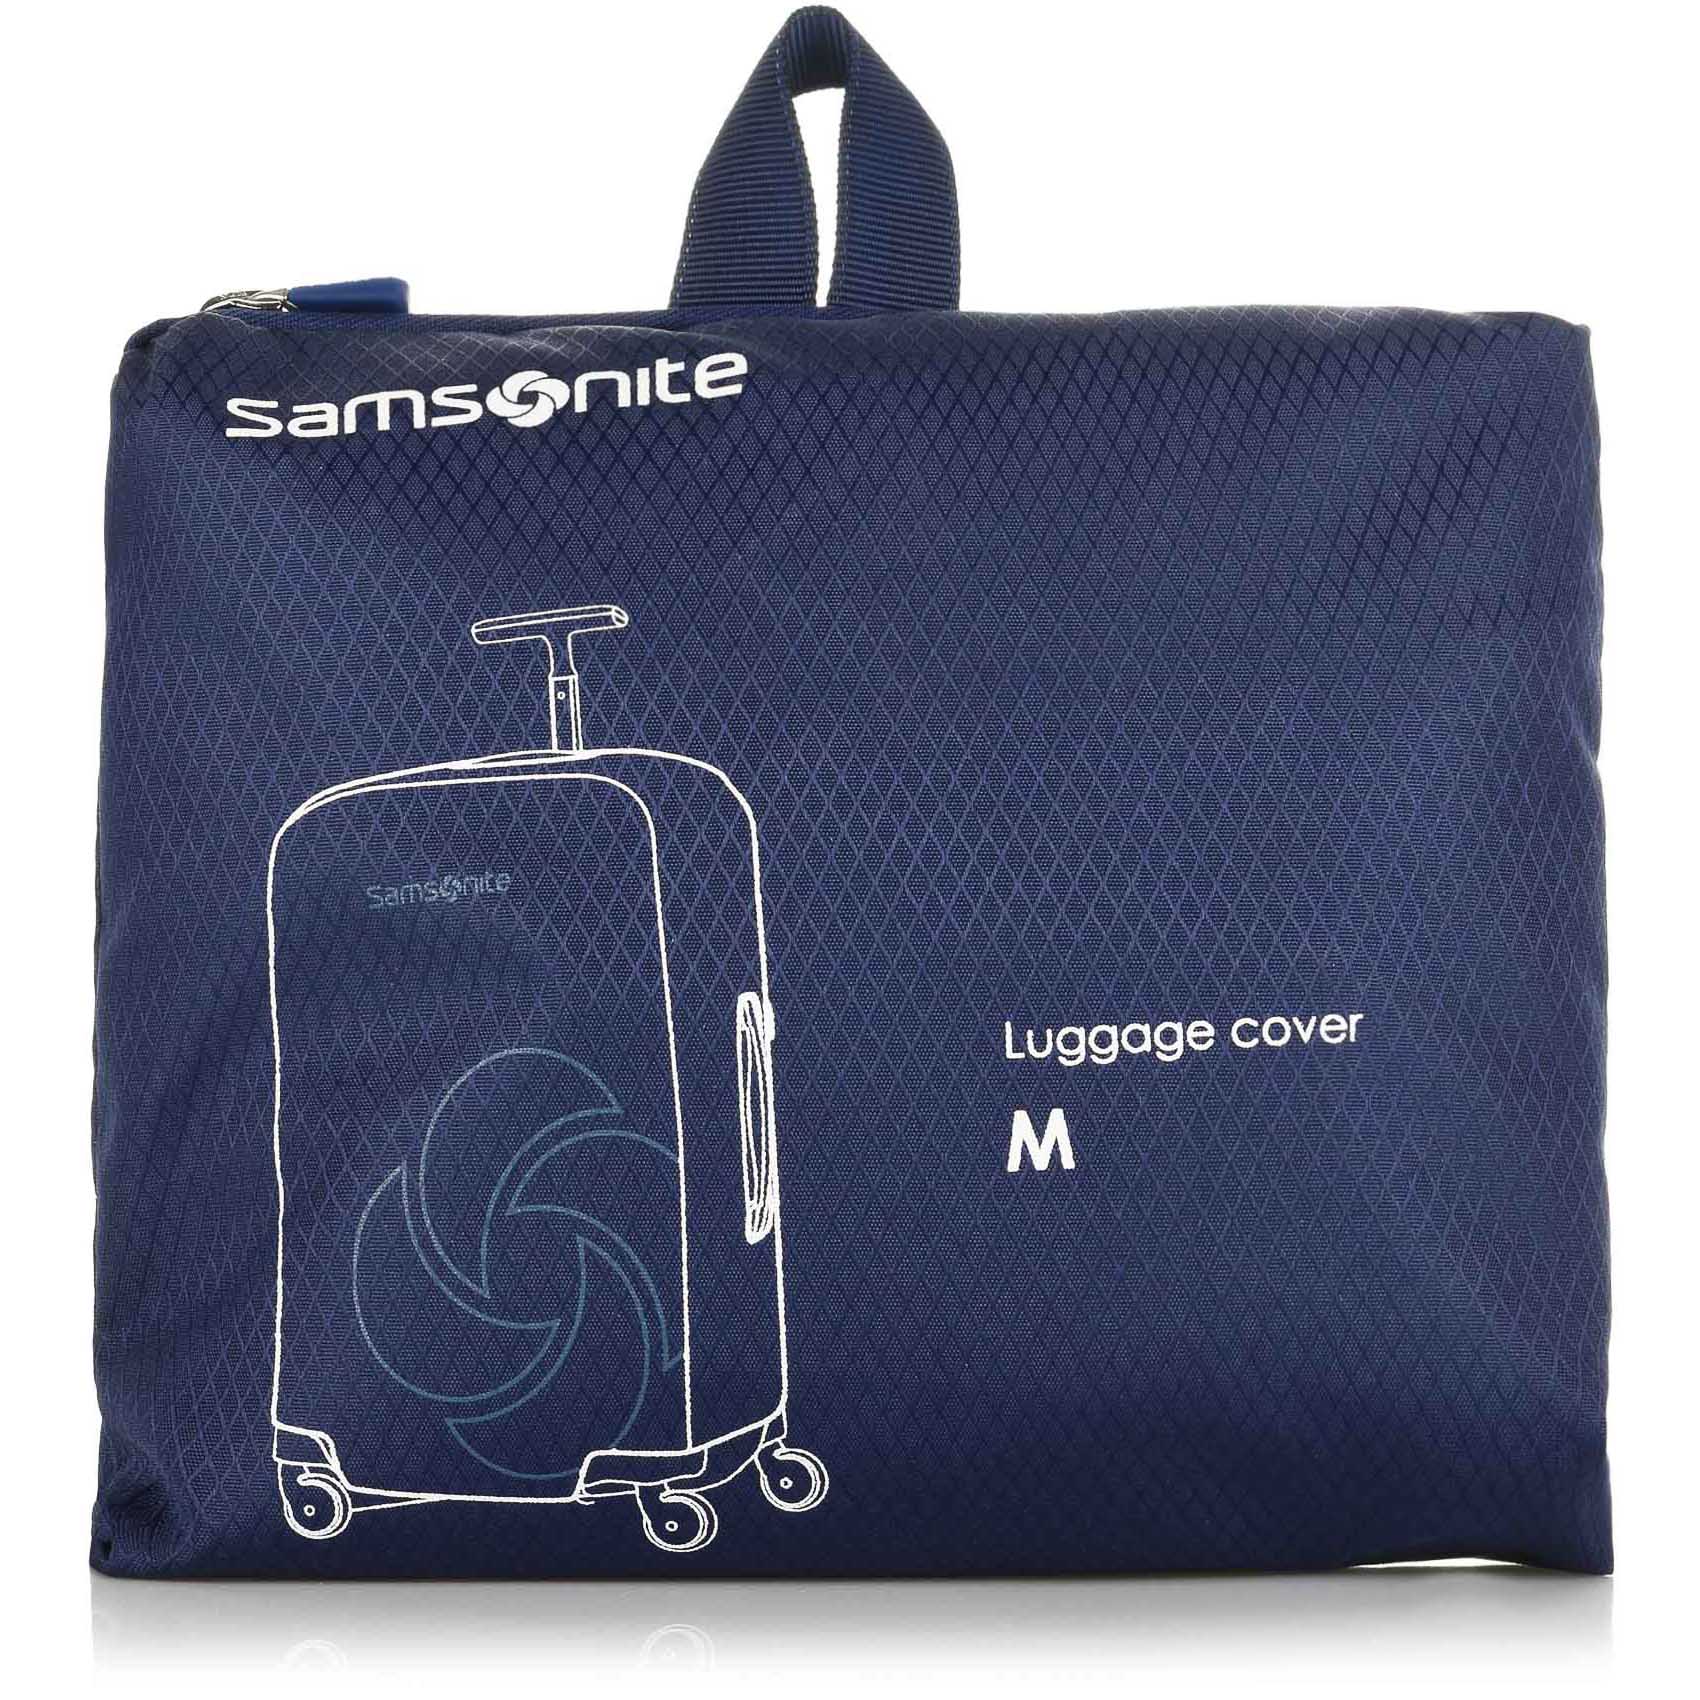 Samsonite Κάλυμμα Βαλίτσας Samsonite Foldable Luggage Cover Μedium 121224-1549 Midnight Blue